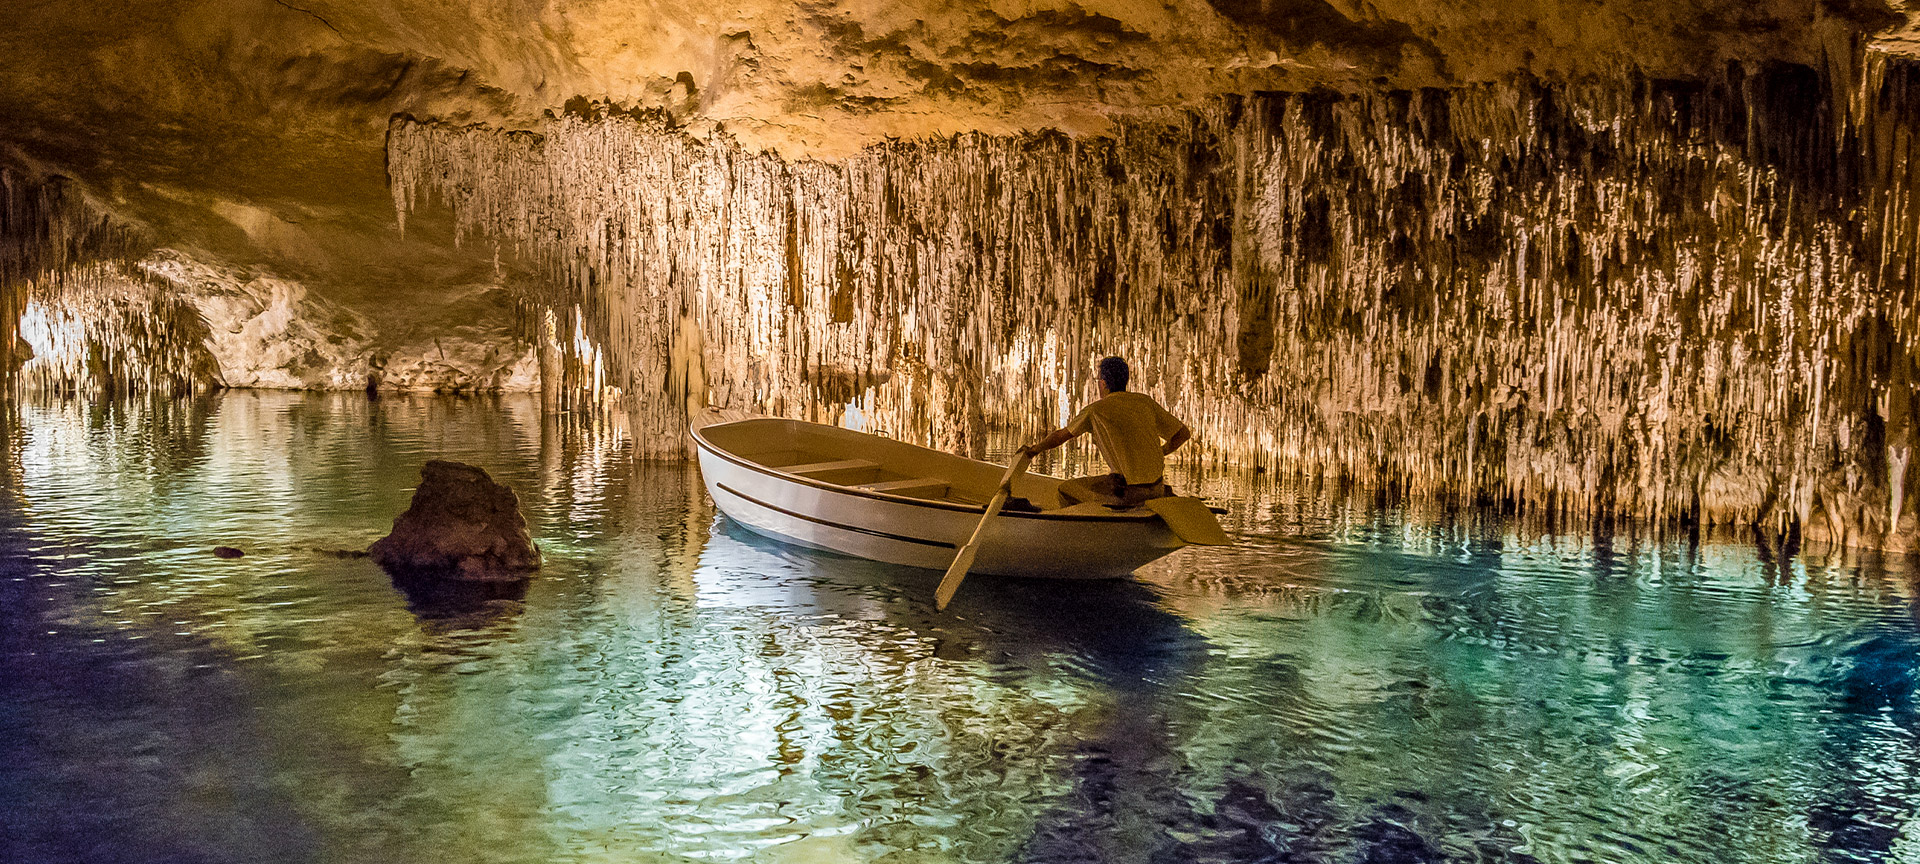 Persoon roeit in ondergrondse grot met stalactieten.